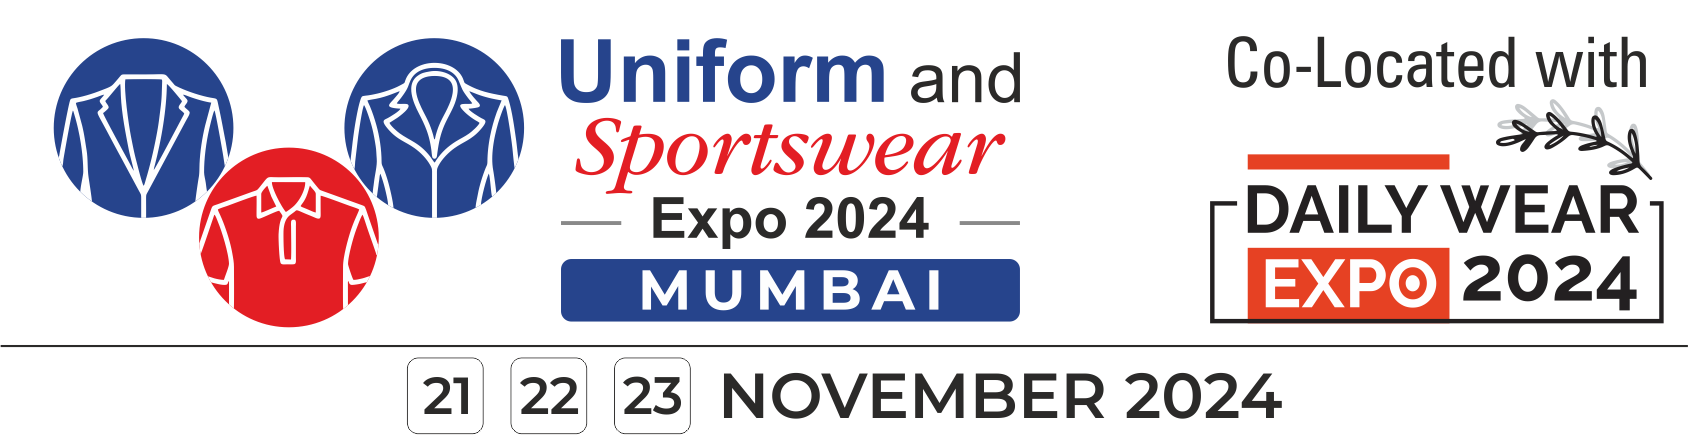 Uniform_Sports_Wear_Expo_2024